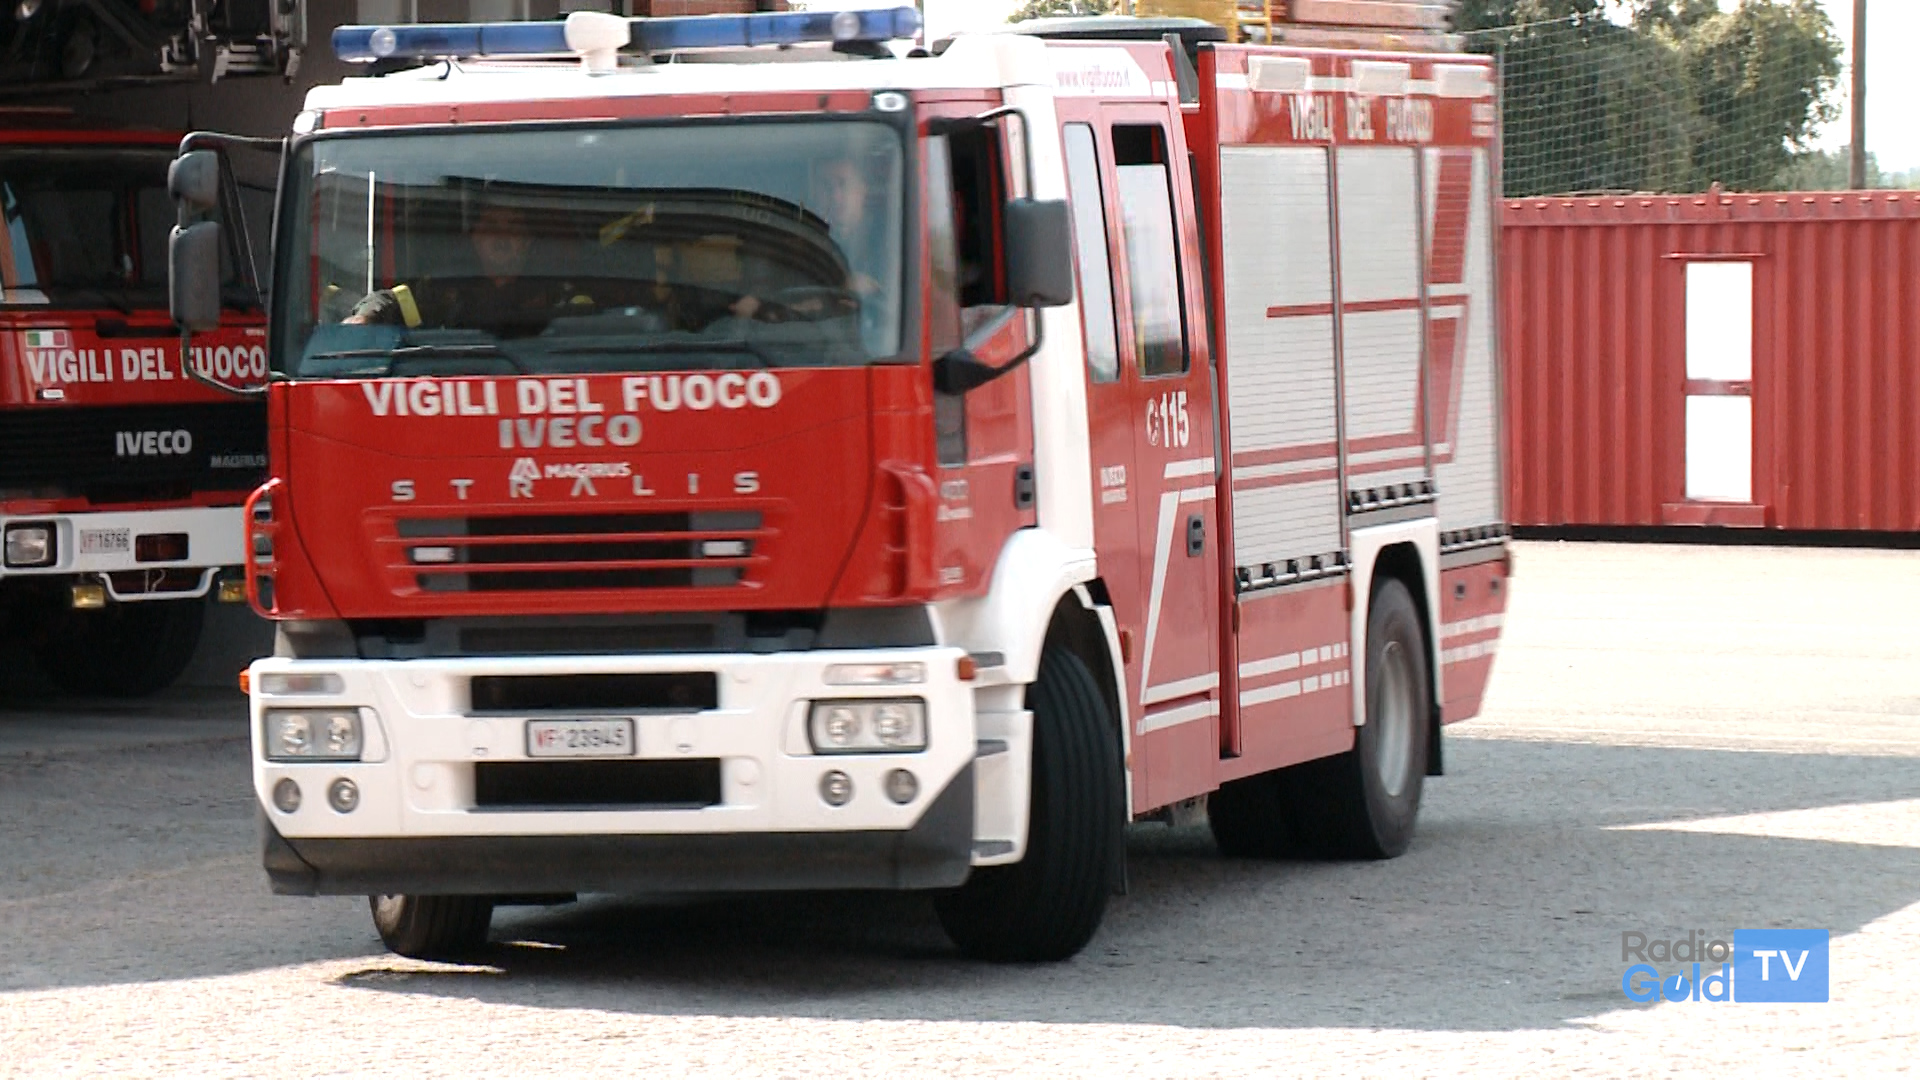 In fiamme una cascina a Stazzano: Vigili dle Fuoco al lavoro dalle 6.30